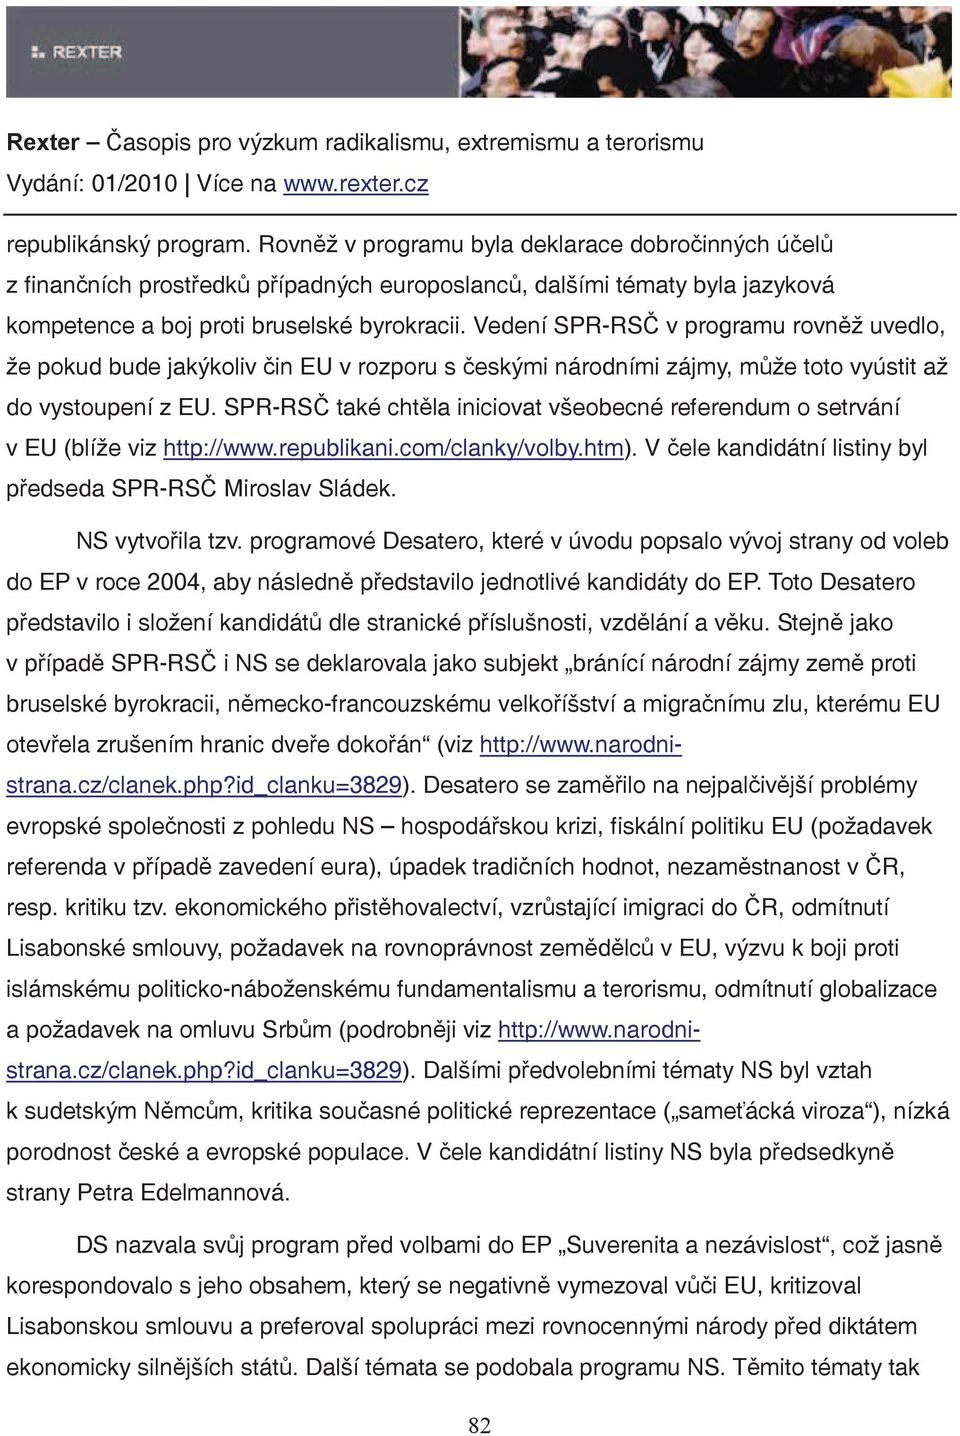 SPR-RS také chtla iniciovat všeobecné referendum o setrvání v EU (blíže viz http://www.republikani.com/clanky/volby.htm). V ele kandidátní listiny byl pedseda SPR-RS Miroslav Sládek. NS vytvoila tzv.